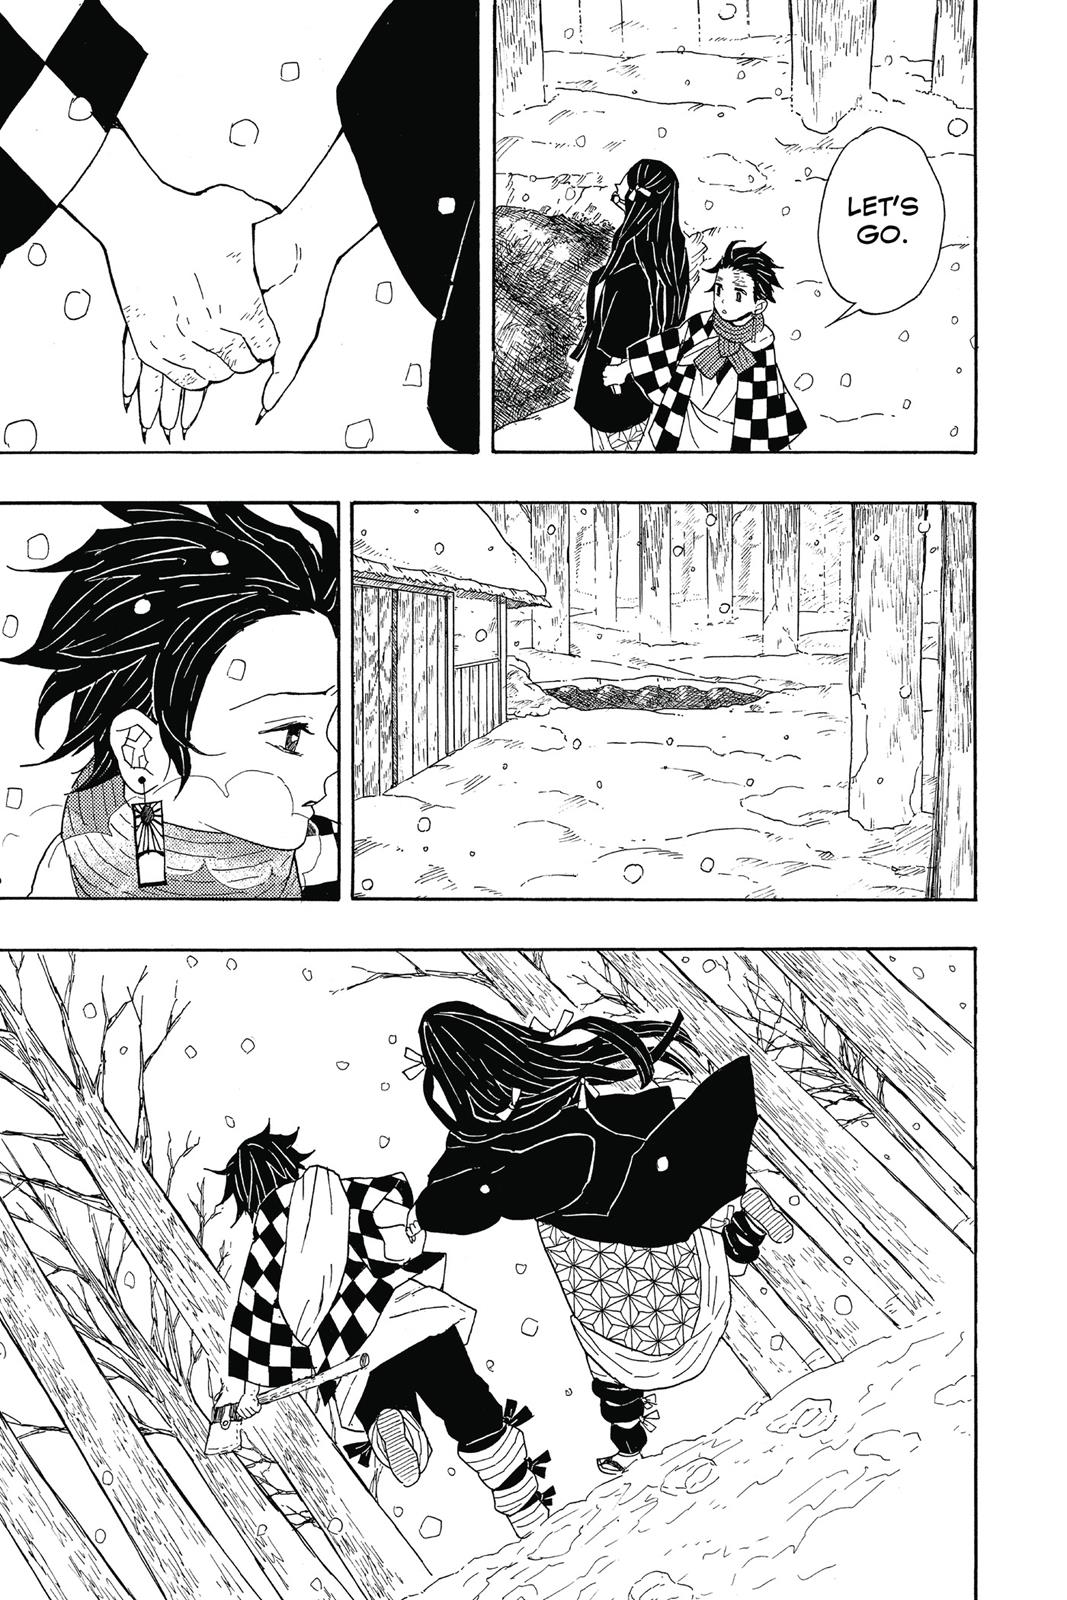 Demon Slayer Manga Manga Chapter - 1 - image 37